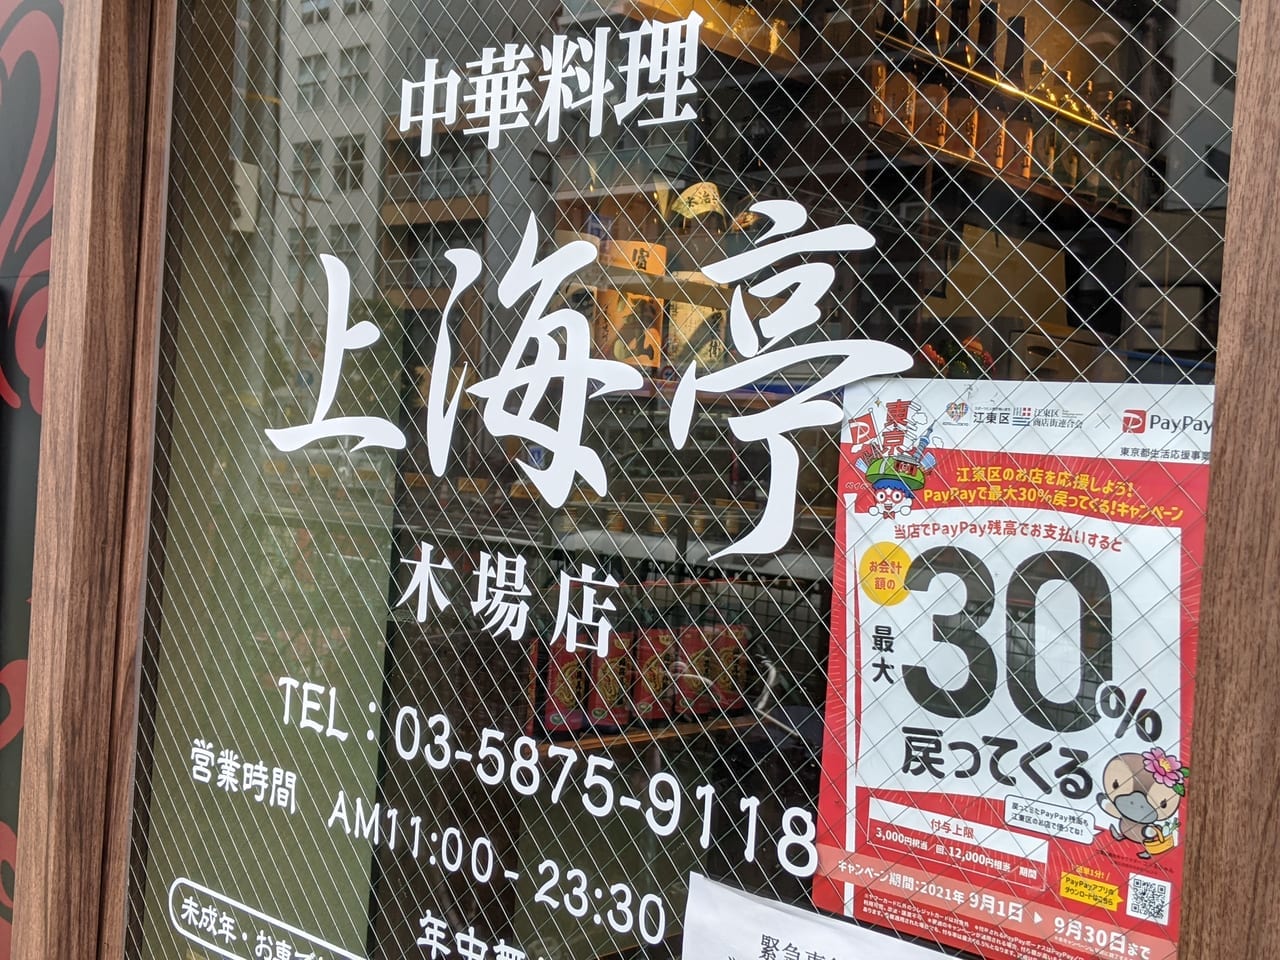 中華料理上海亭の外観